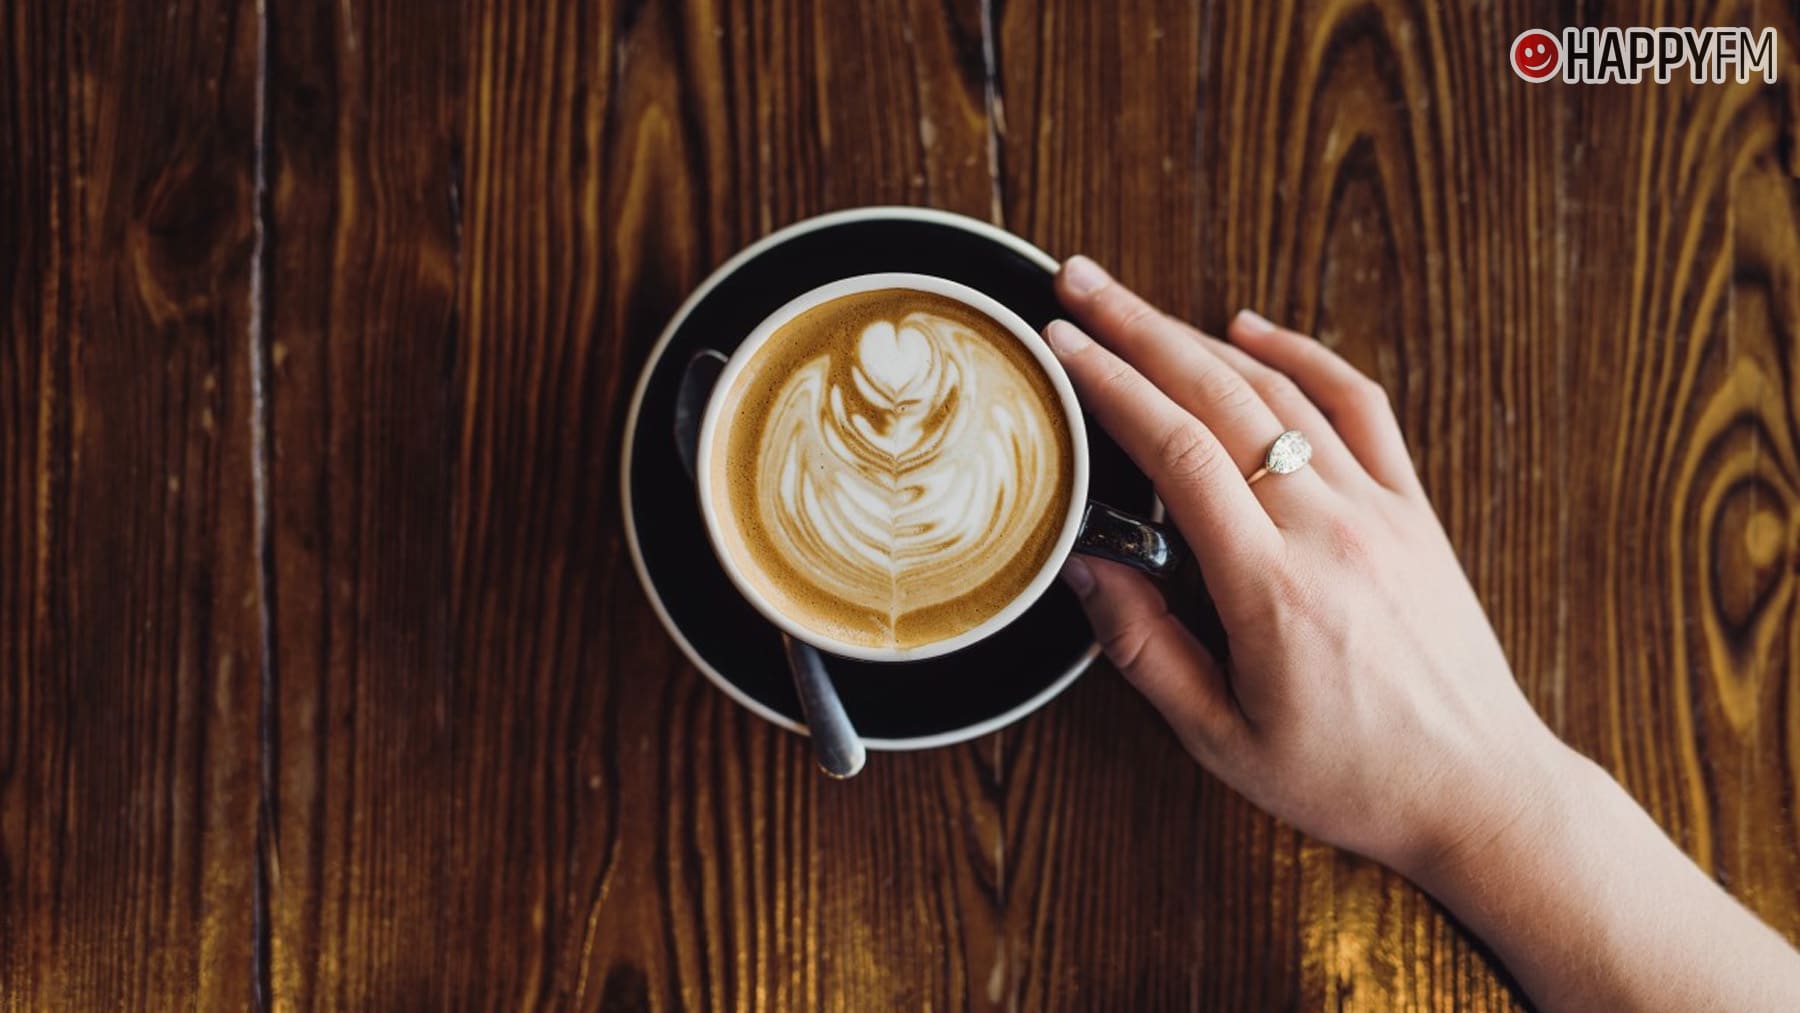 Los 5 estilos vanguardistas de cafeteras que darán un toque de sabor a tu rutina